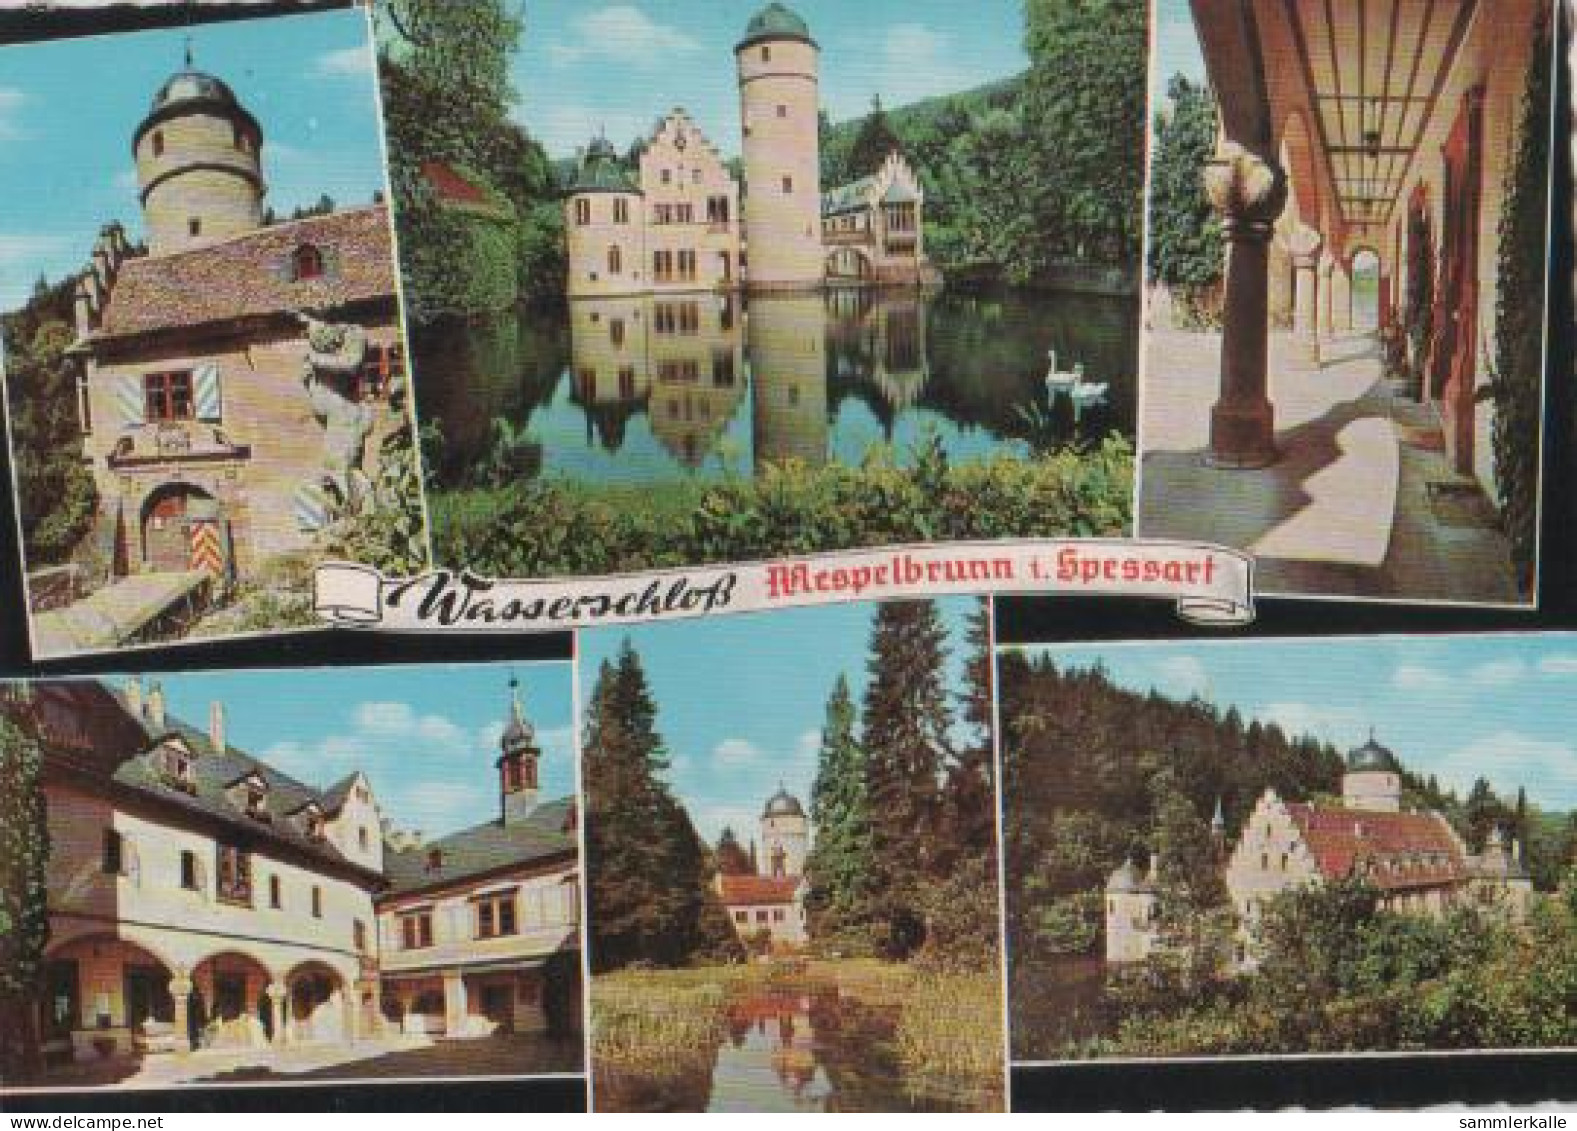 23571 - Mespelbrunn I. Spessart - Ca. 1975 - Aschaffenburg